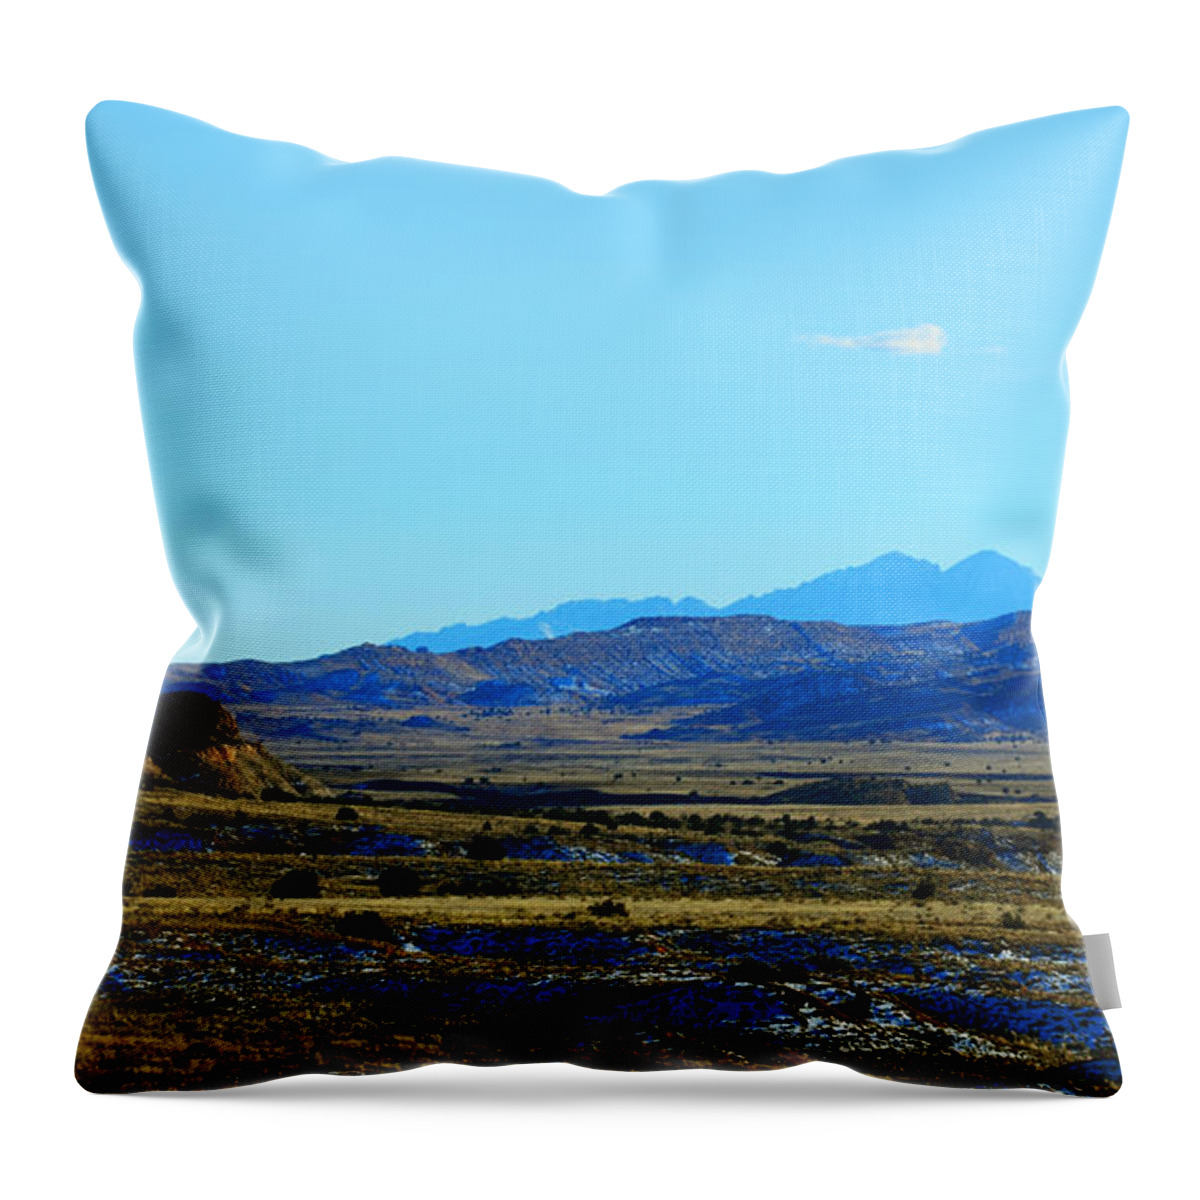 Southwest Landscape Throw Pillow featuring the photograph Desert range by Robert WK Clark